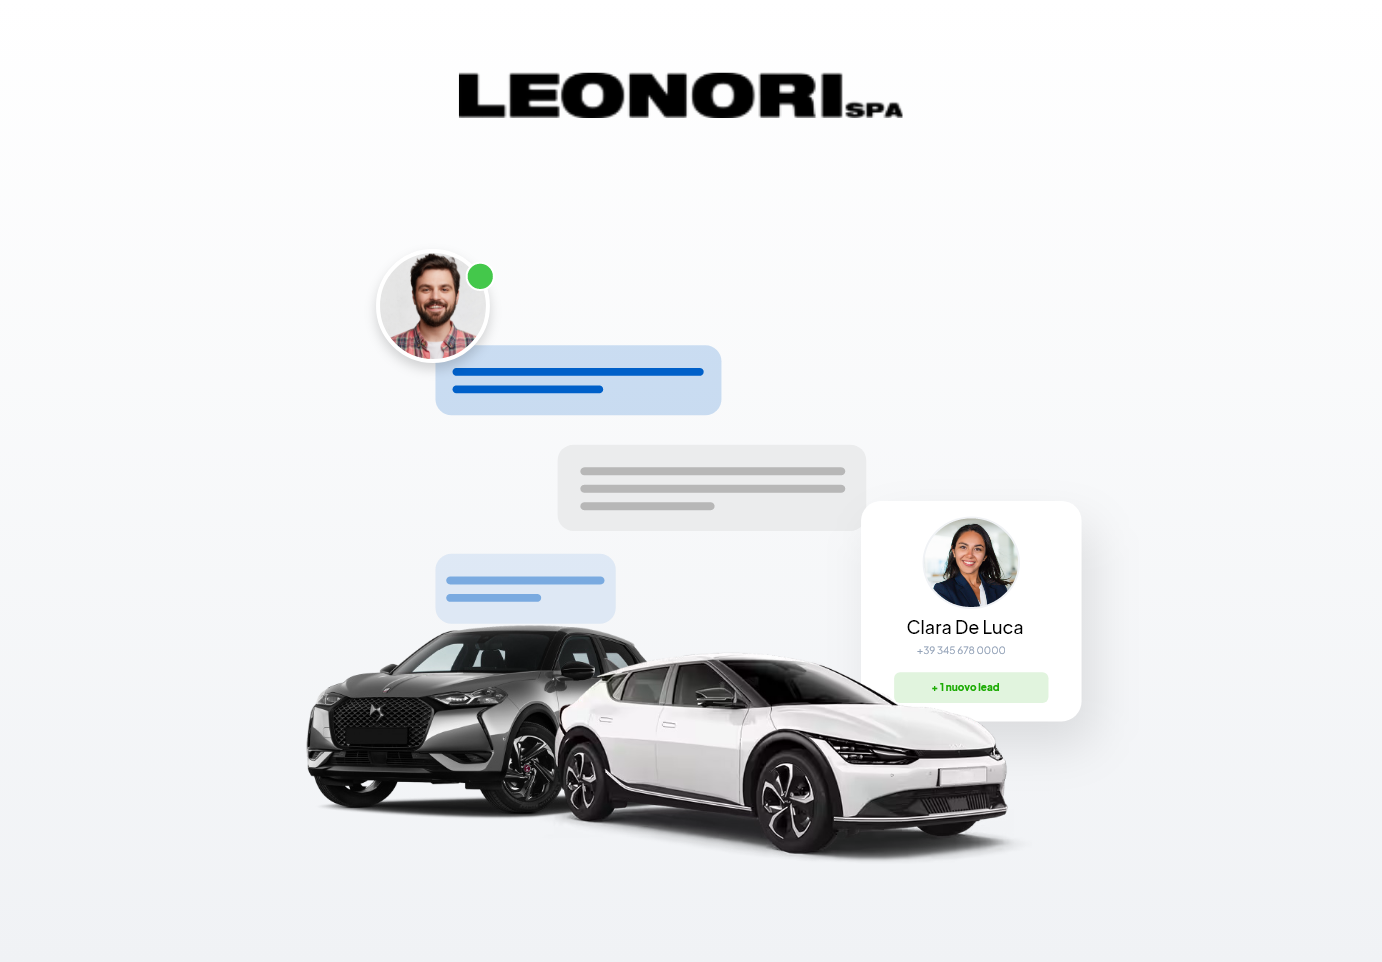 Leonori SPA - Come ottimizzare la relazione cliente di 90.000 utenti mensili?